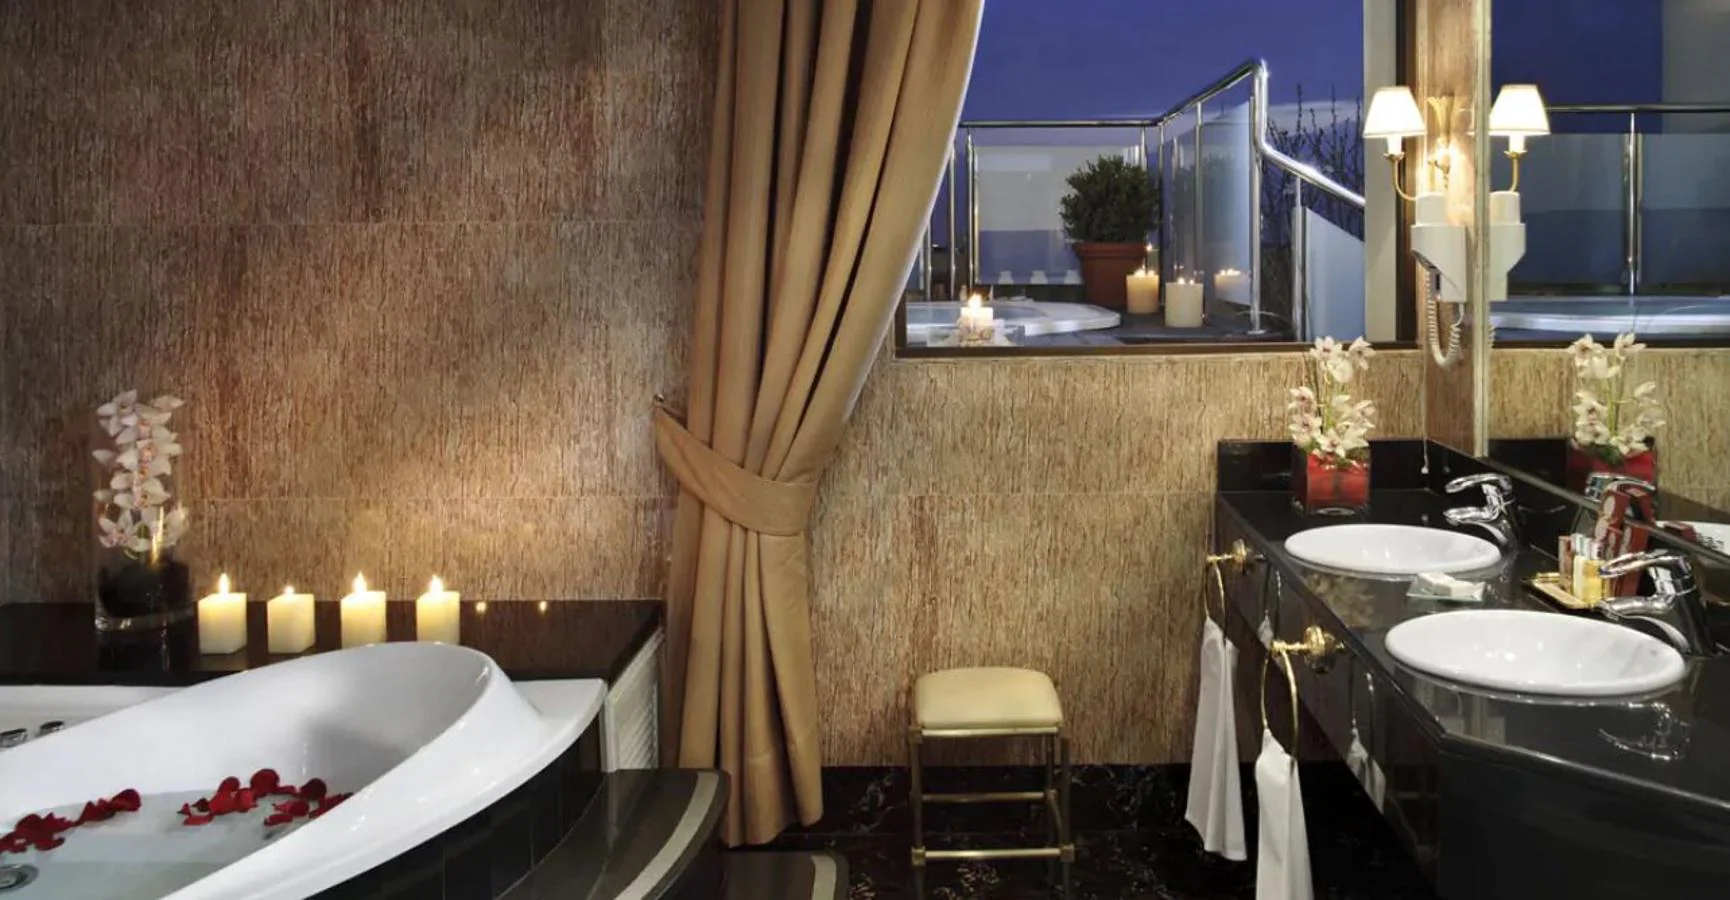 Suite Presidencial. Las suites cuentan con enorme jacuzzi y en el cuarto de baño se sirven productos de estética y belleza de lujo